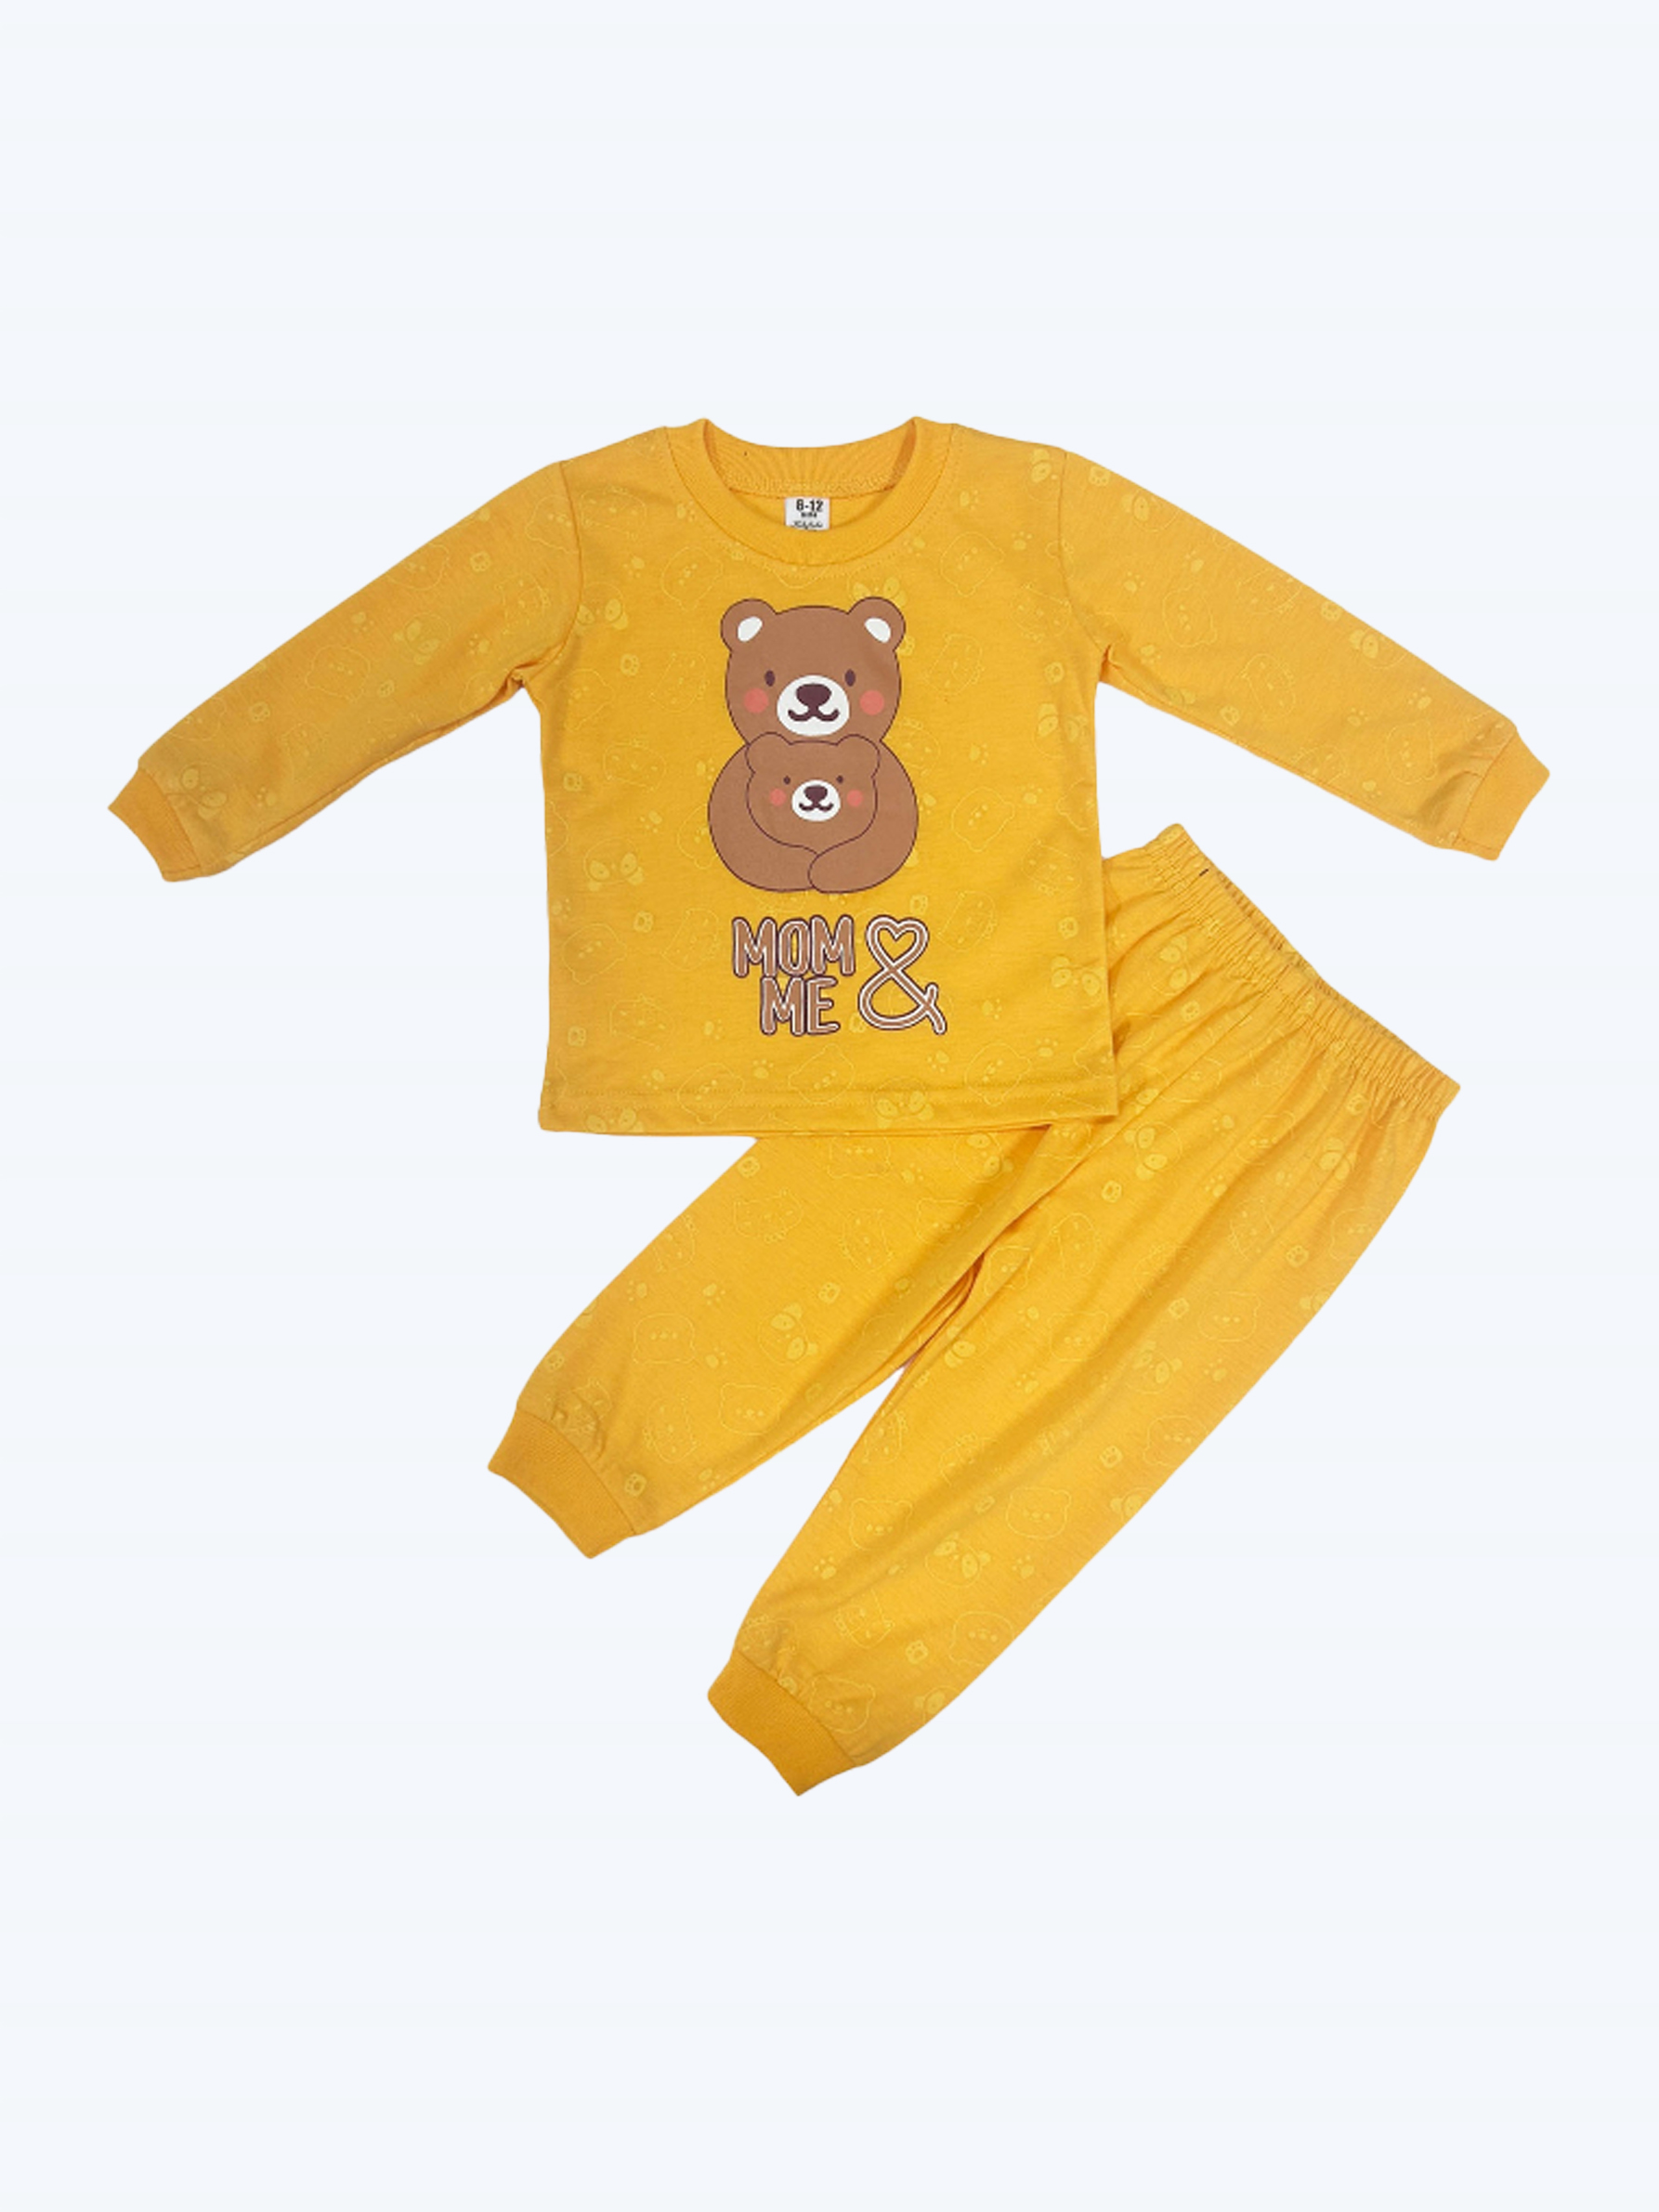 Kikilala Baby Pyjamas Long Sleeves PJB268-KIKILALA